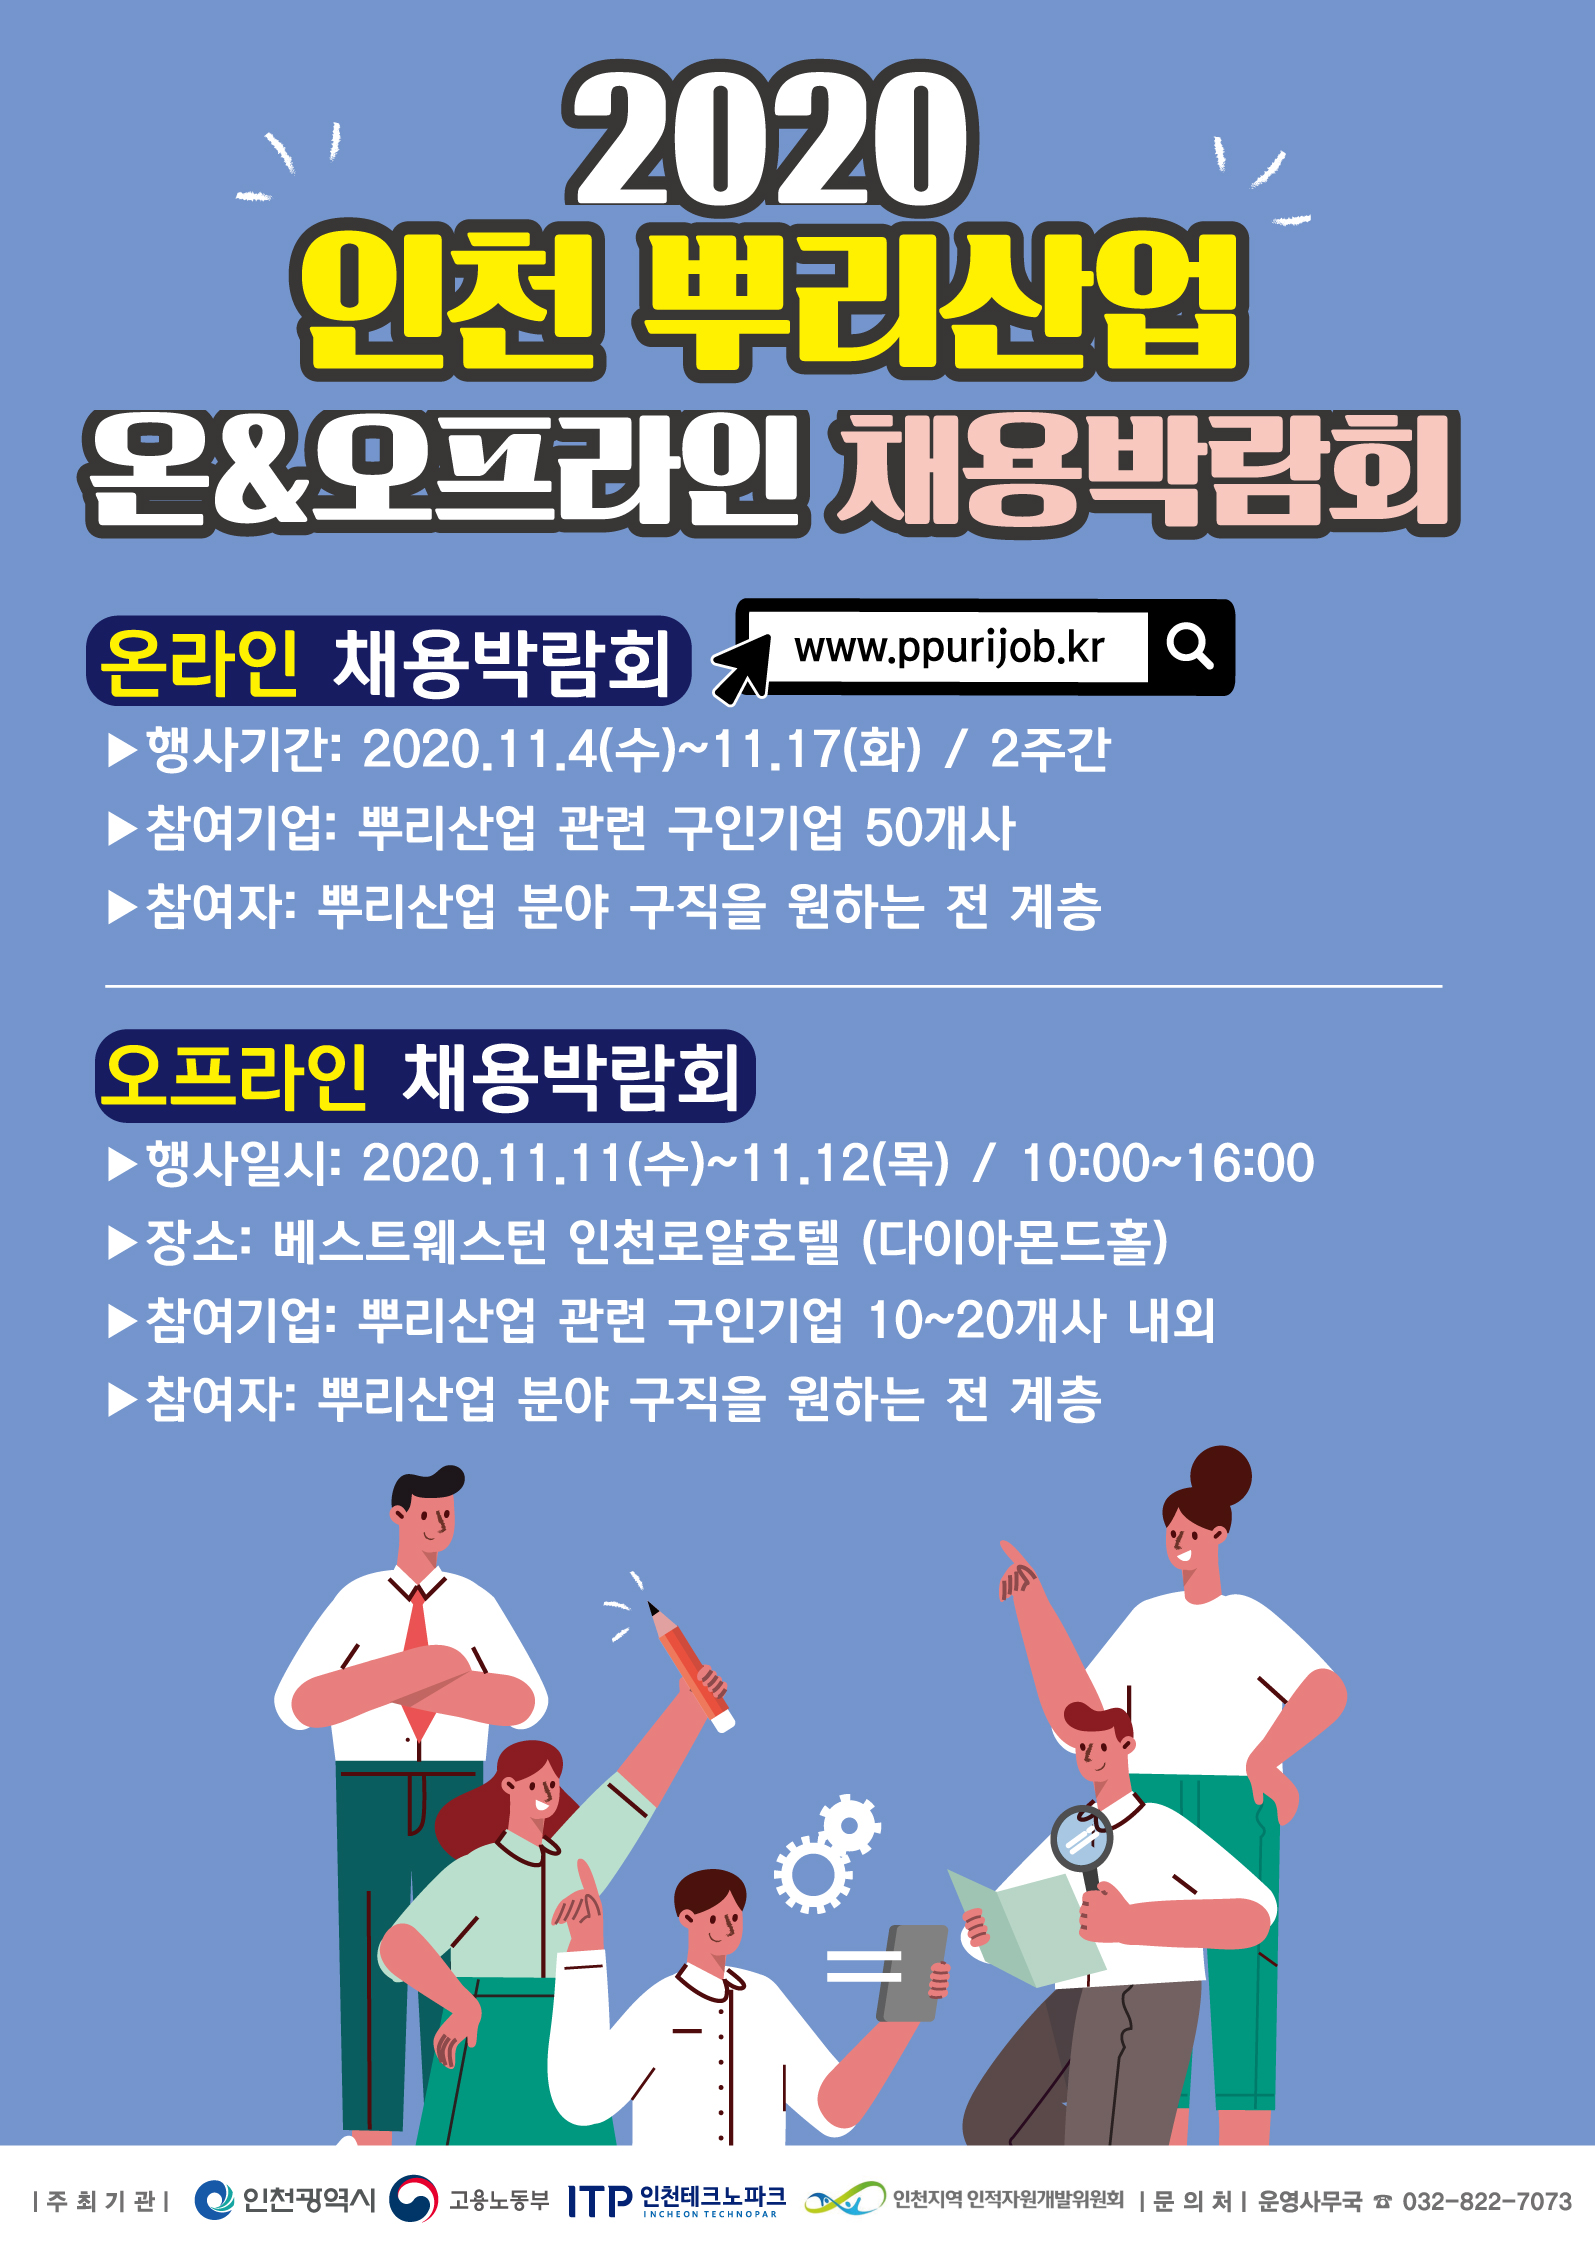 2020 인천 뿌리산업 온&오프 채용박람회 참여기업 모집의 1번째 이미지